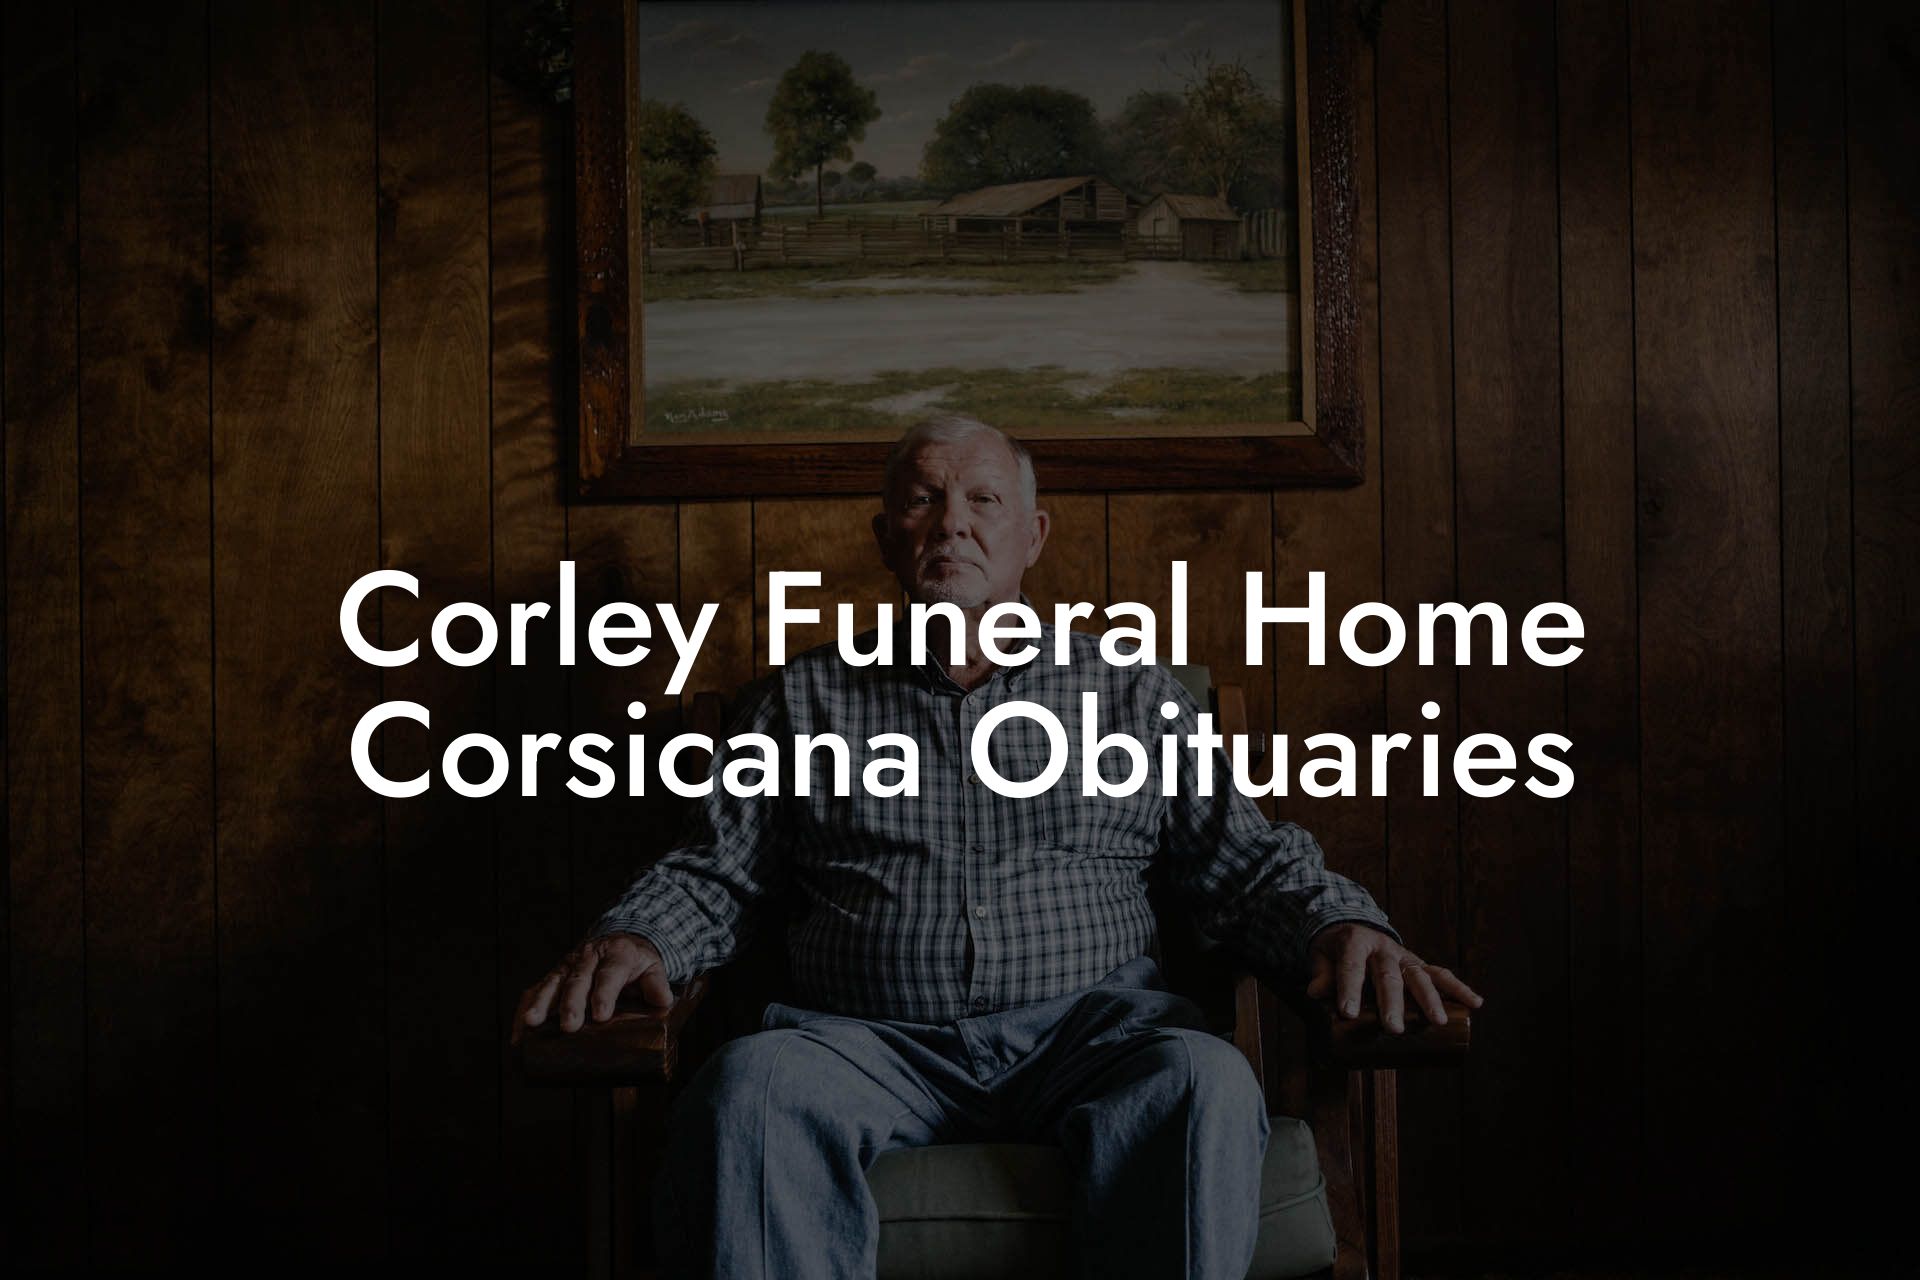 Corley Funeral Home Corsicana Obituaries